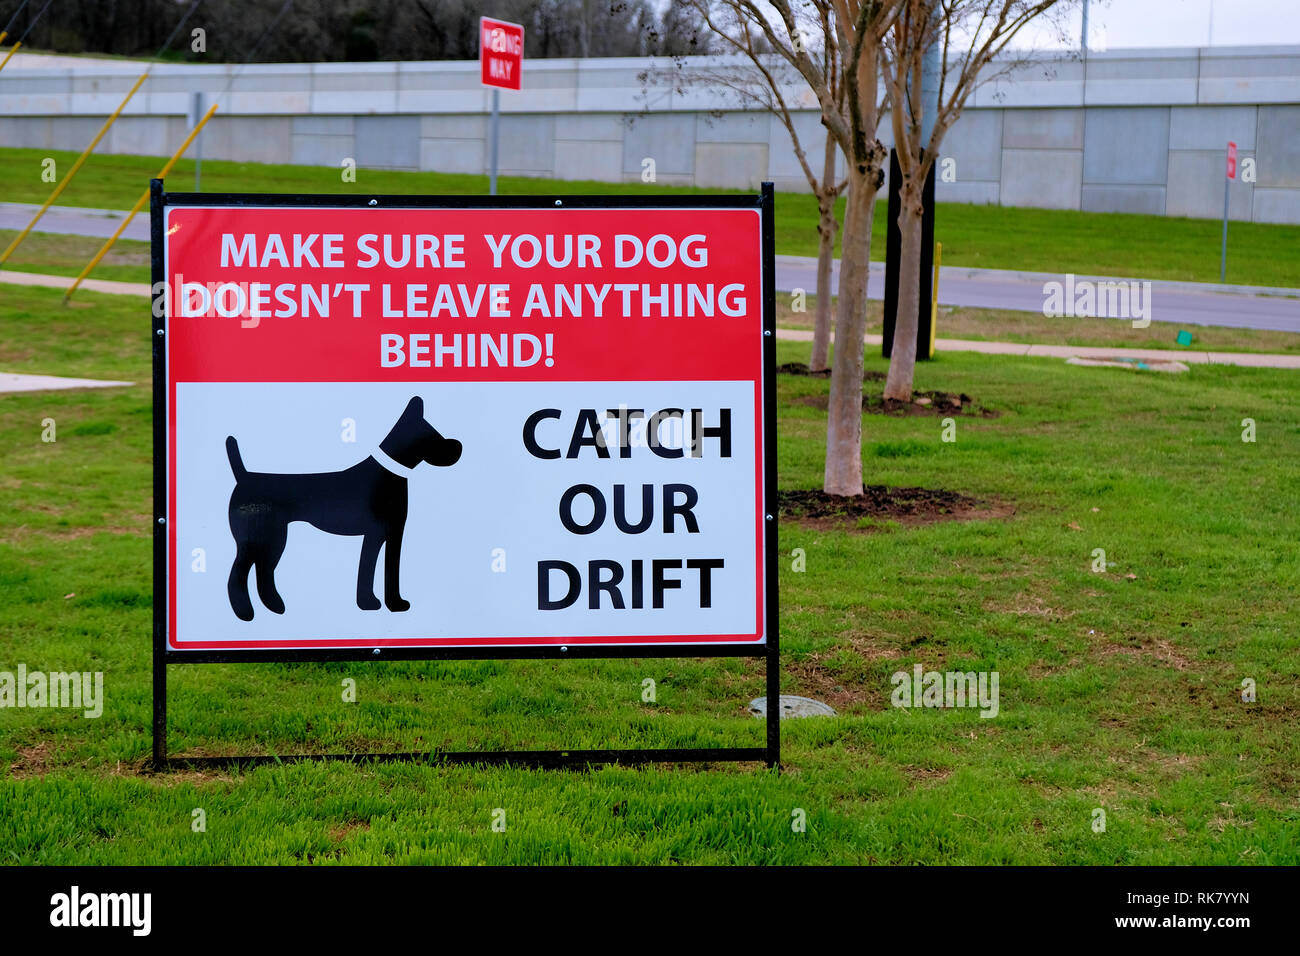 Firmare la richiesta di proprietari di cani pulizia dopo il loro pet: 'catch la nostra deriva. Assicuratevi che il vostro cane non lasciare nulla dietro". Foto Stock